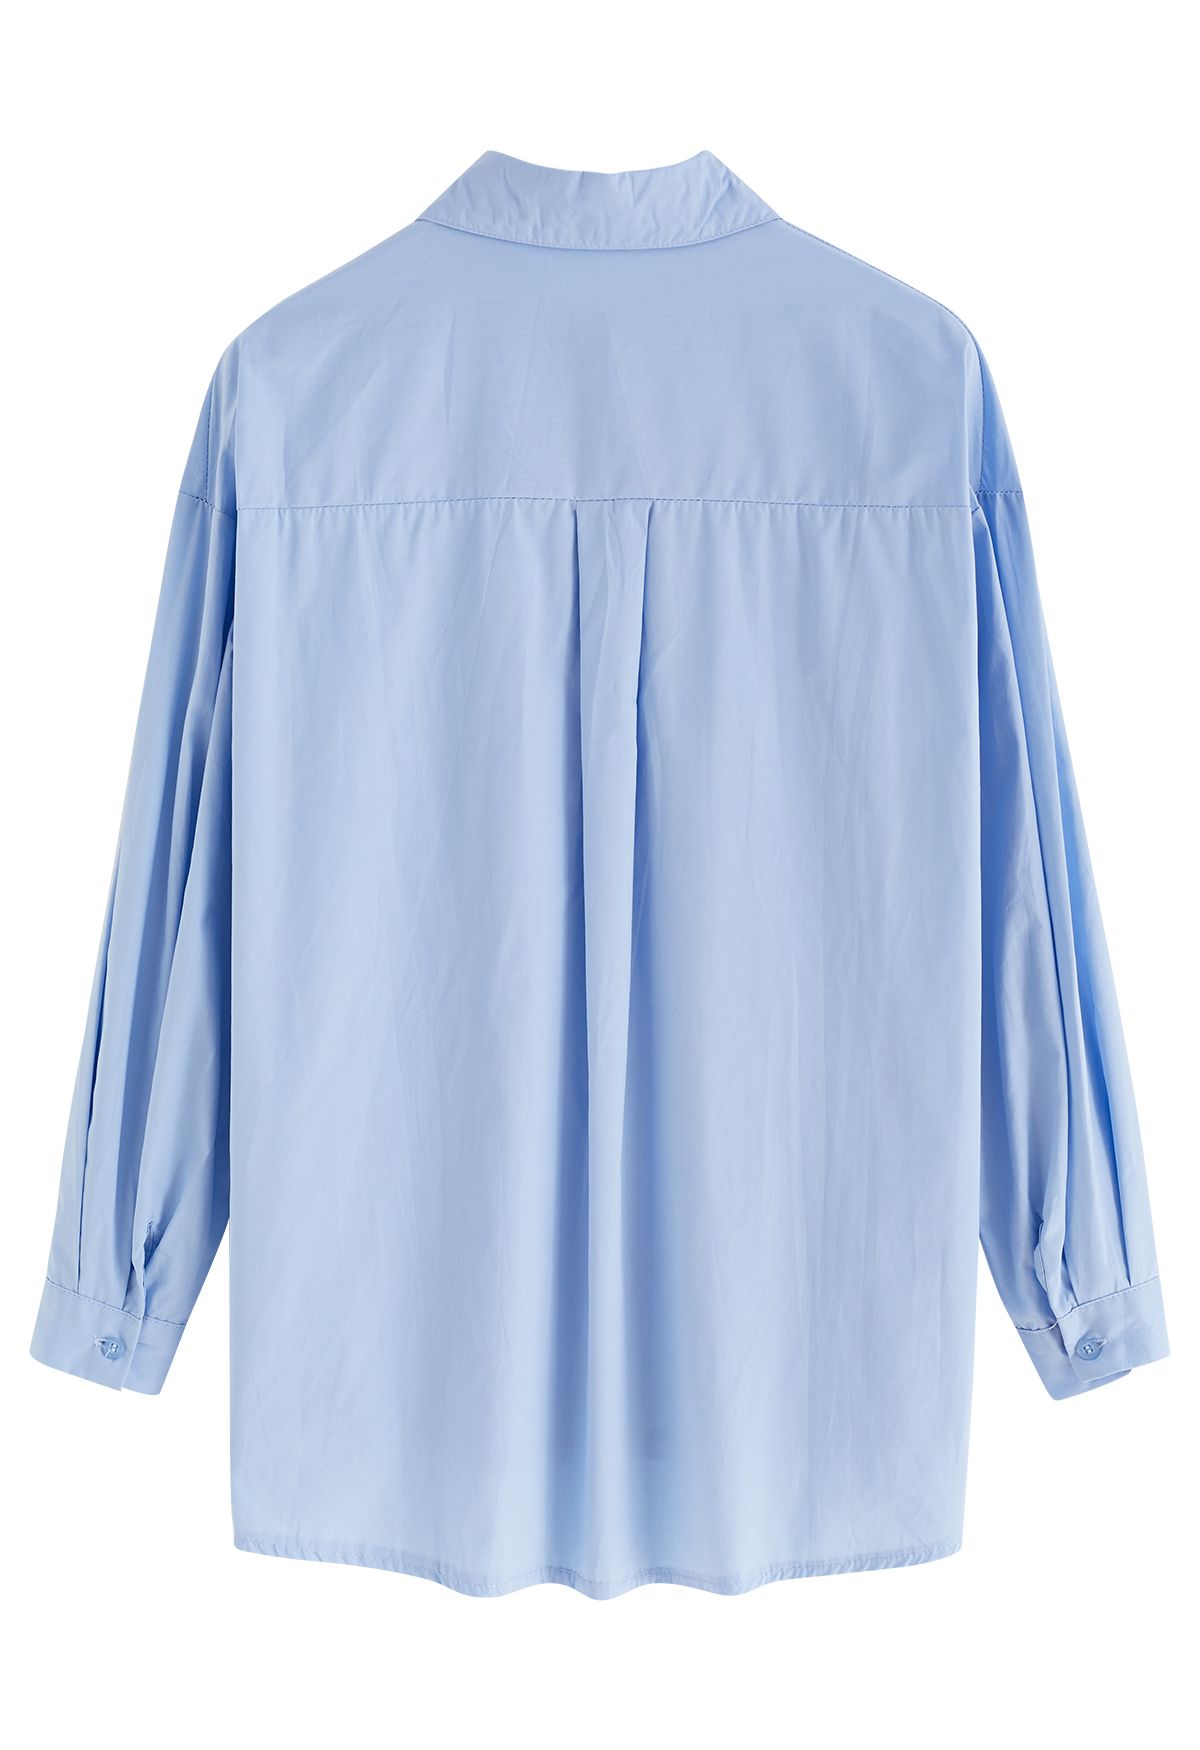 Spitzkragen Button-Down-Baumwollhemd in Blau